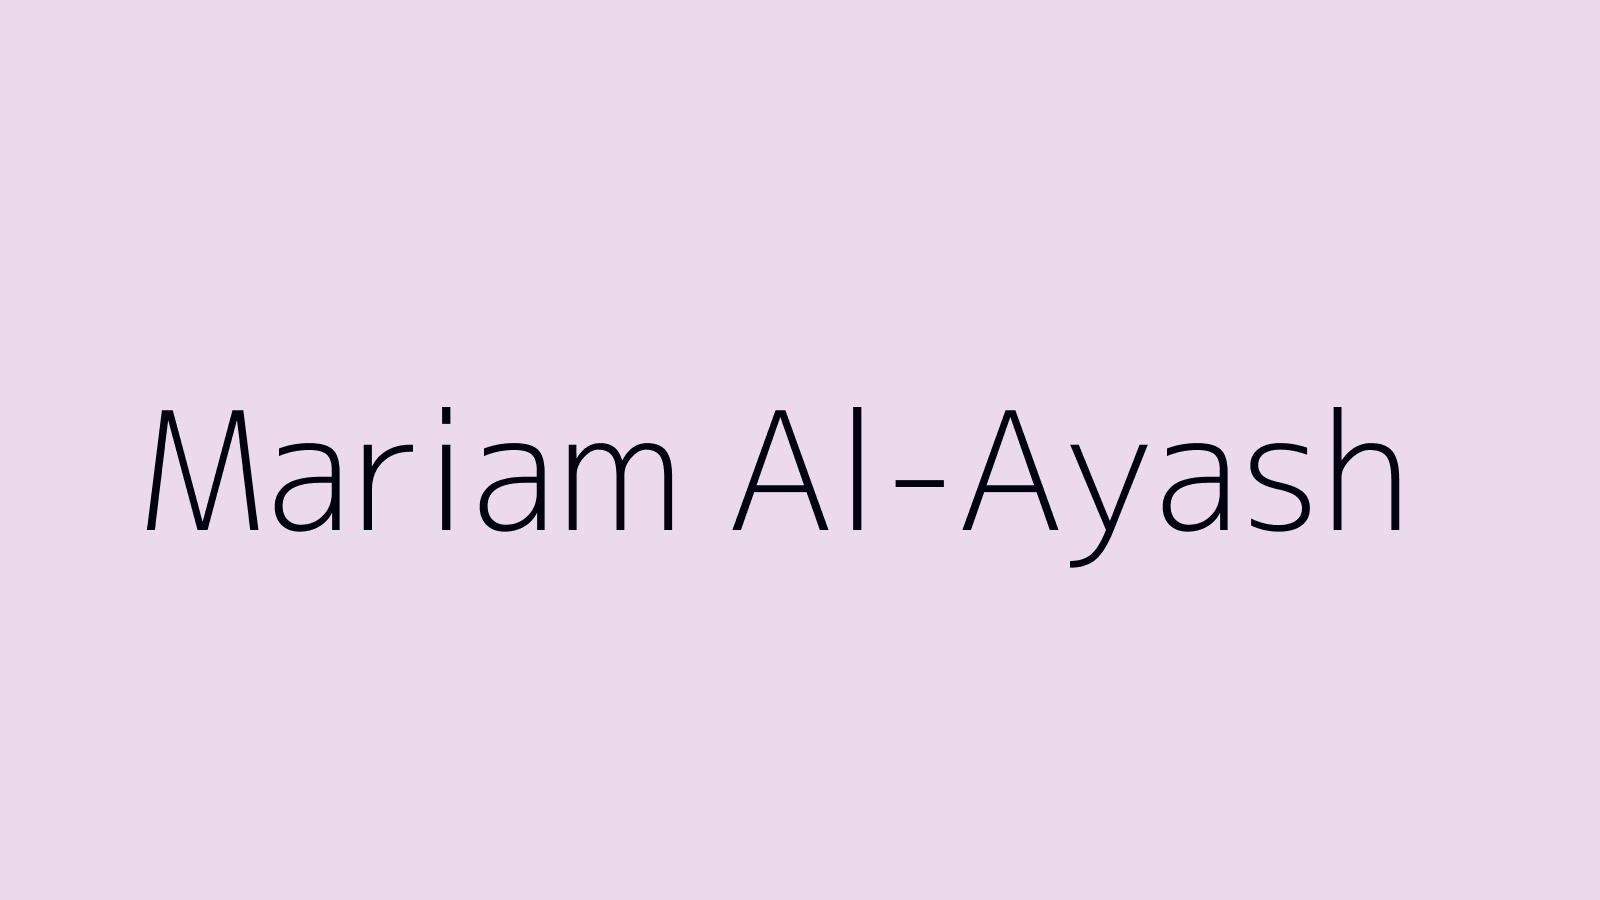 Mariam Al-Ayash